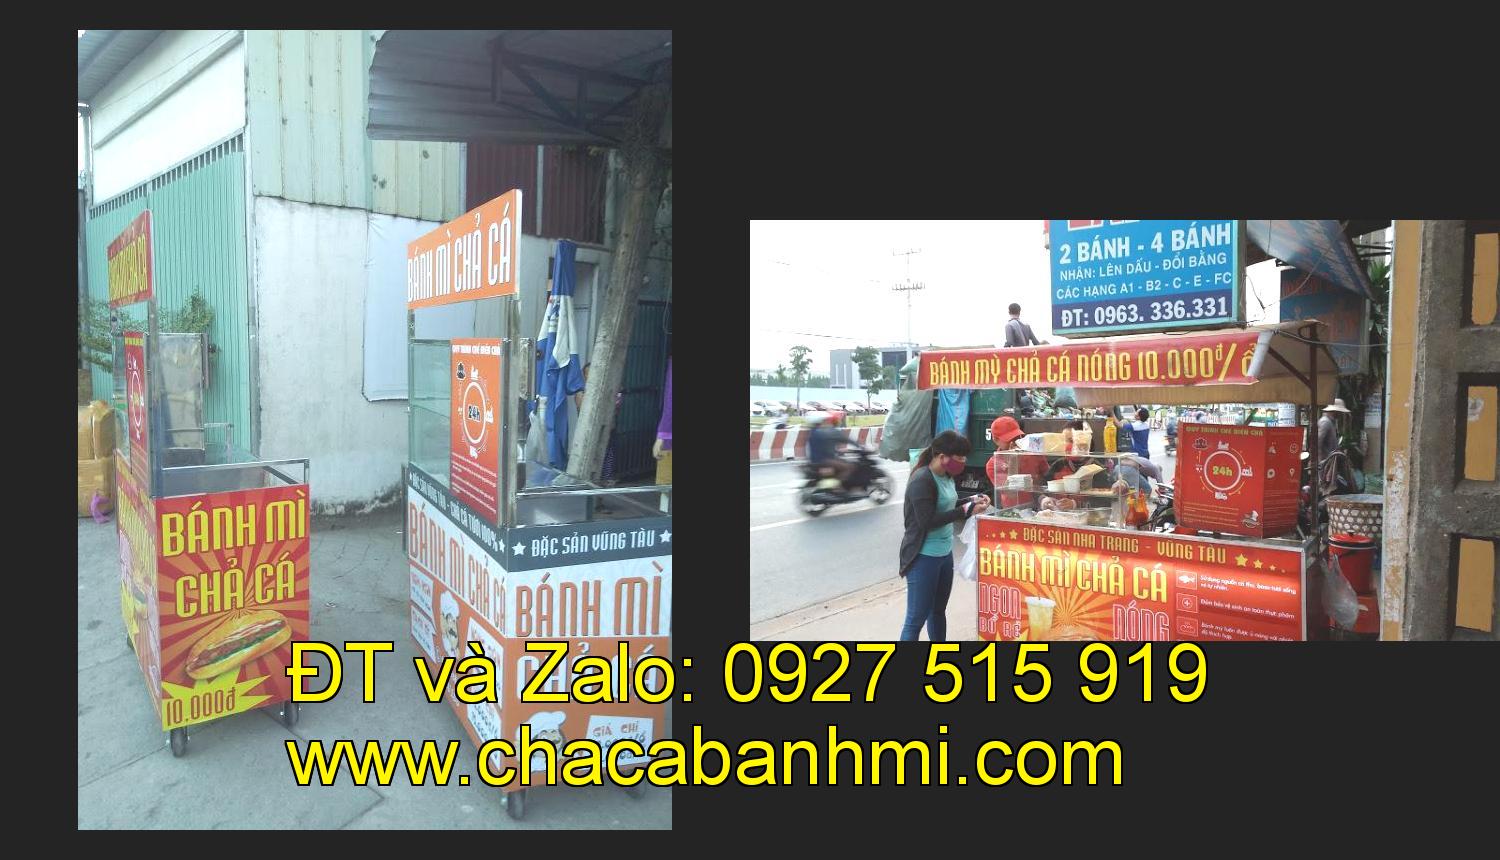 Bán xe bánh mì chả cá tại tỉnh Hà Giang